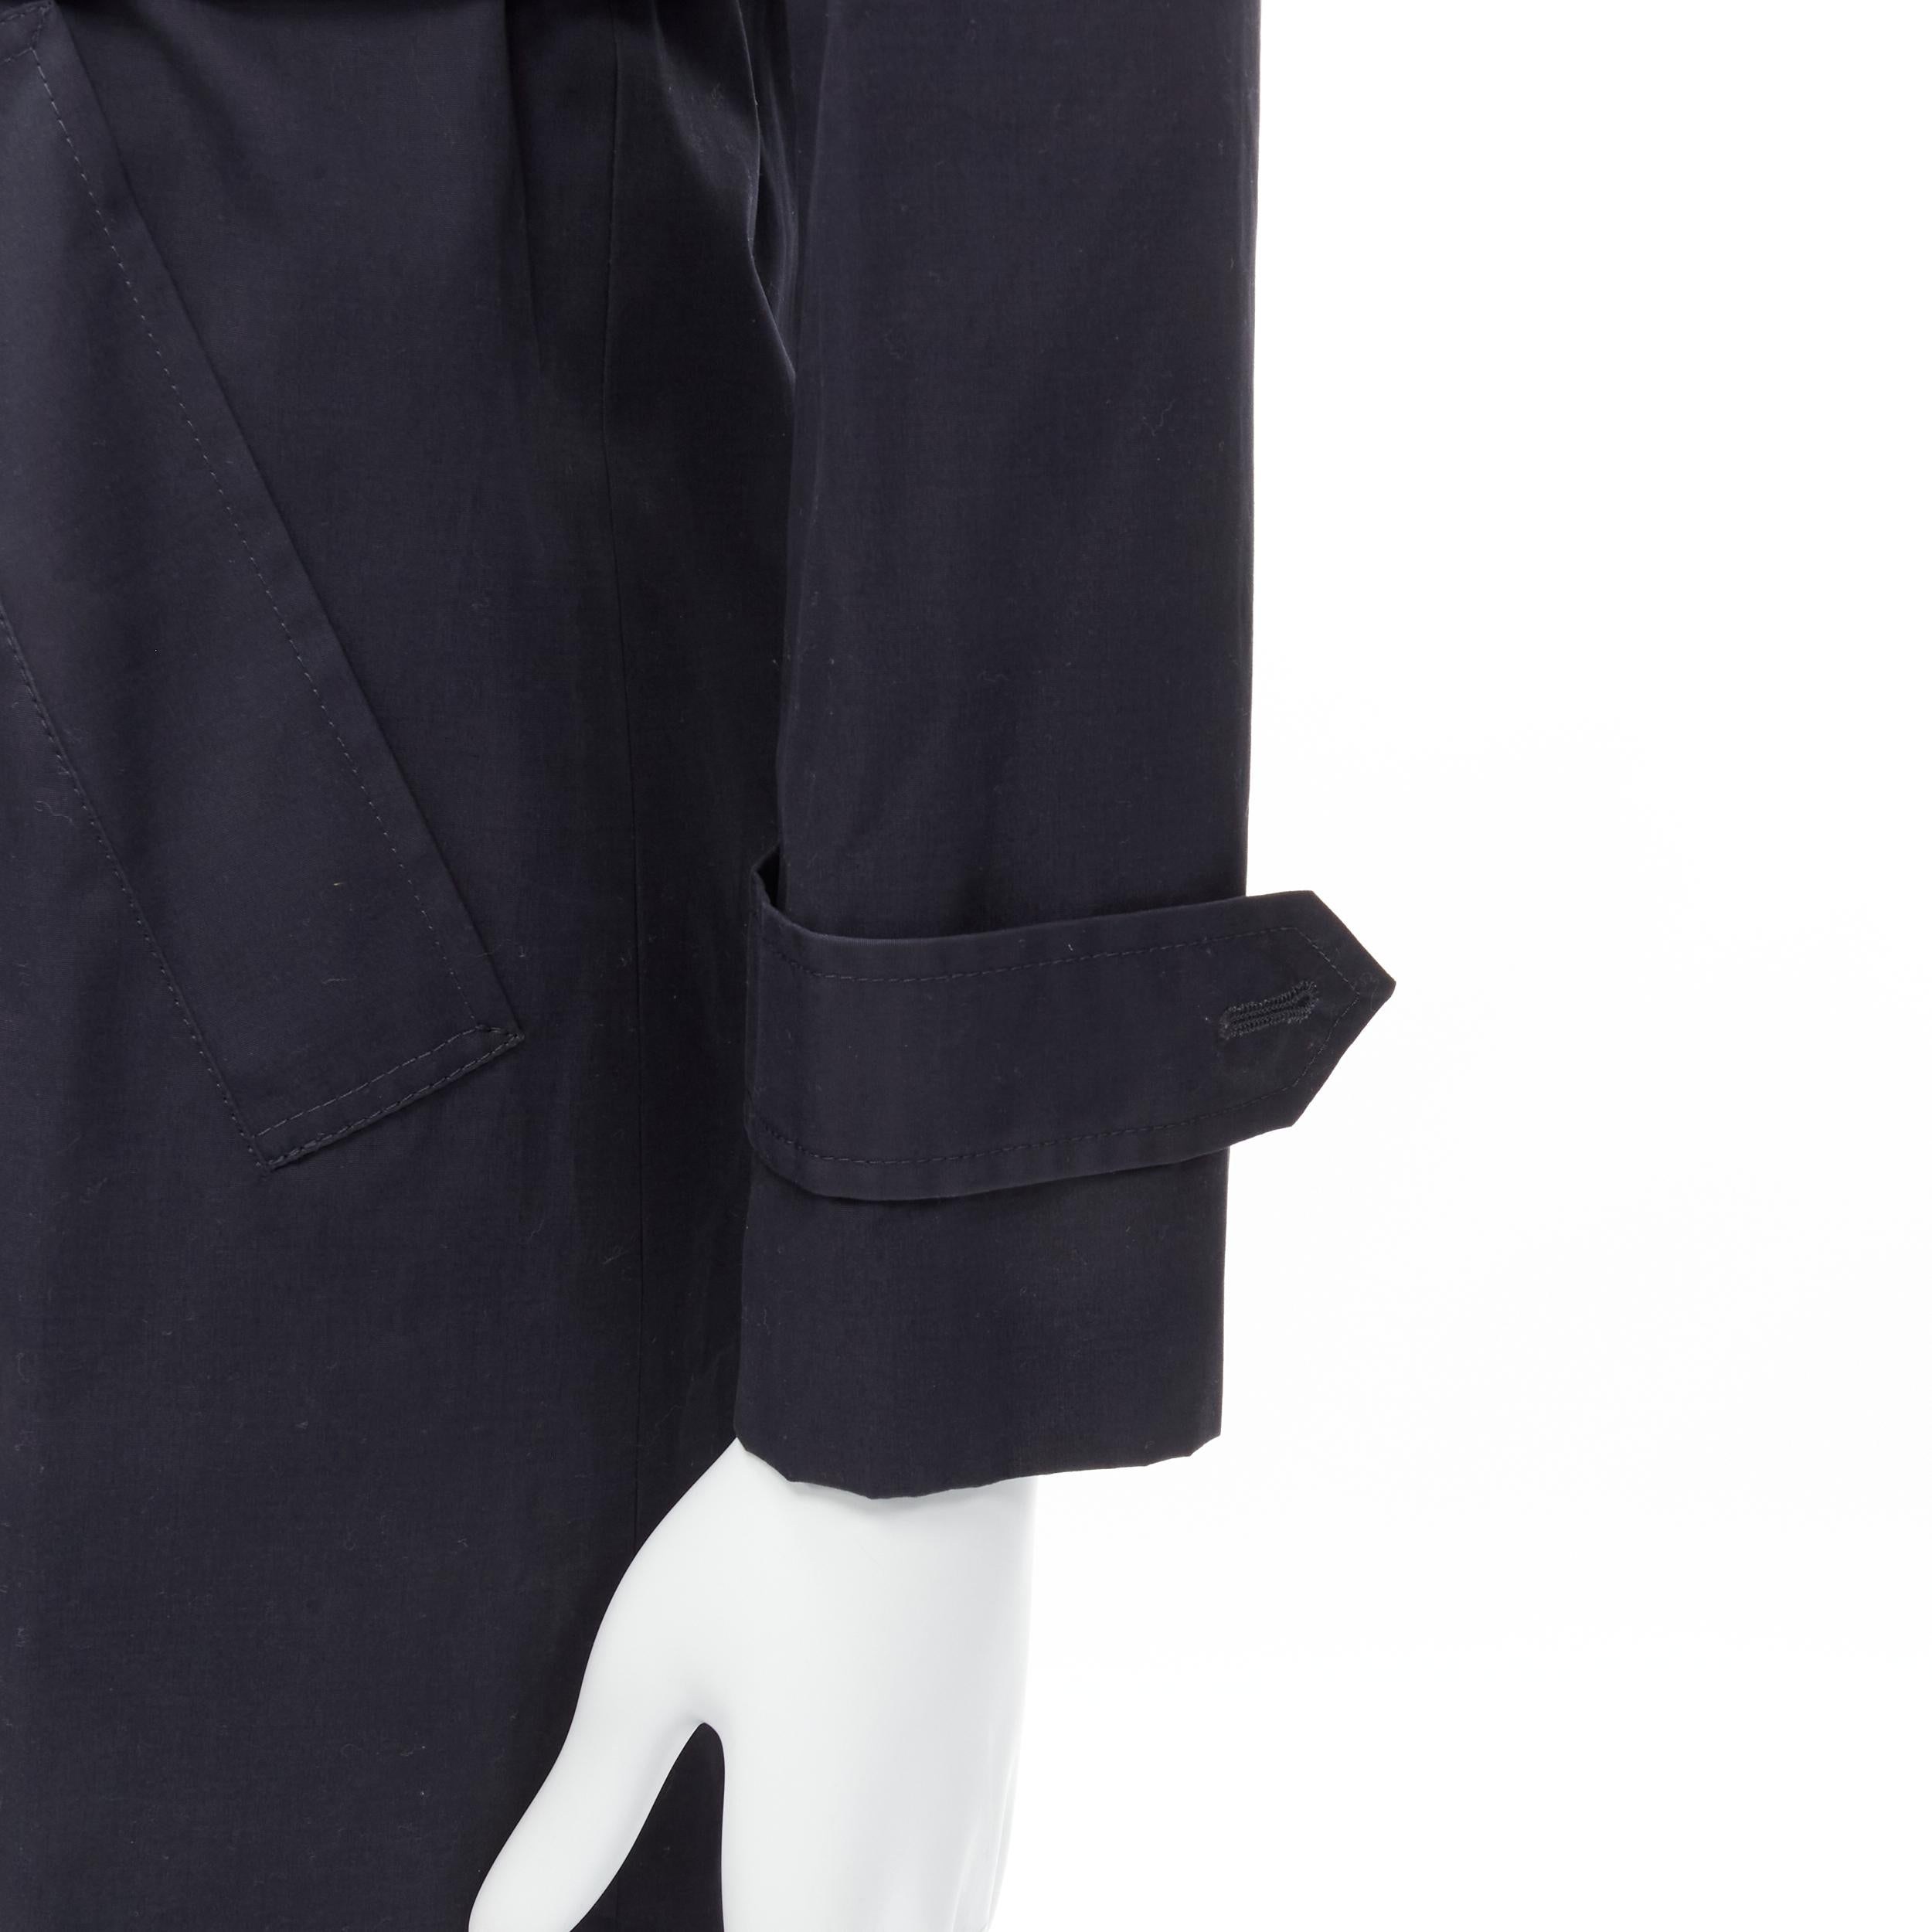 BALENCIAGA DEMNA - Trench-coat en coton bleu marine à boutons fermés et ceinture FR46 S, 2016
Marque : Balenciaga
Designer : Demna
Collection : 2016 
Matériau : Coton
Couleur : Marine
Motif : Solide
Fermeture : ceinture
Détail supplémentaire :